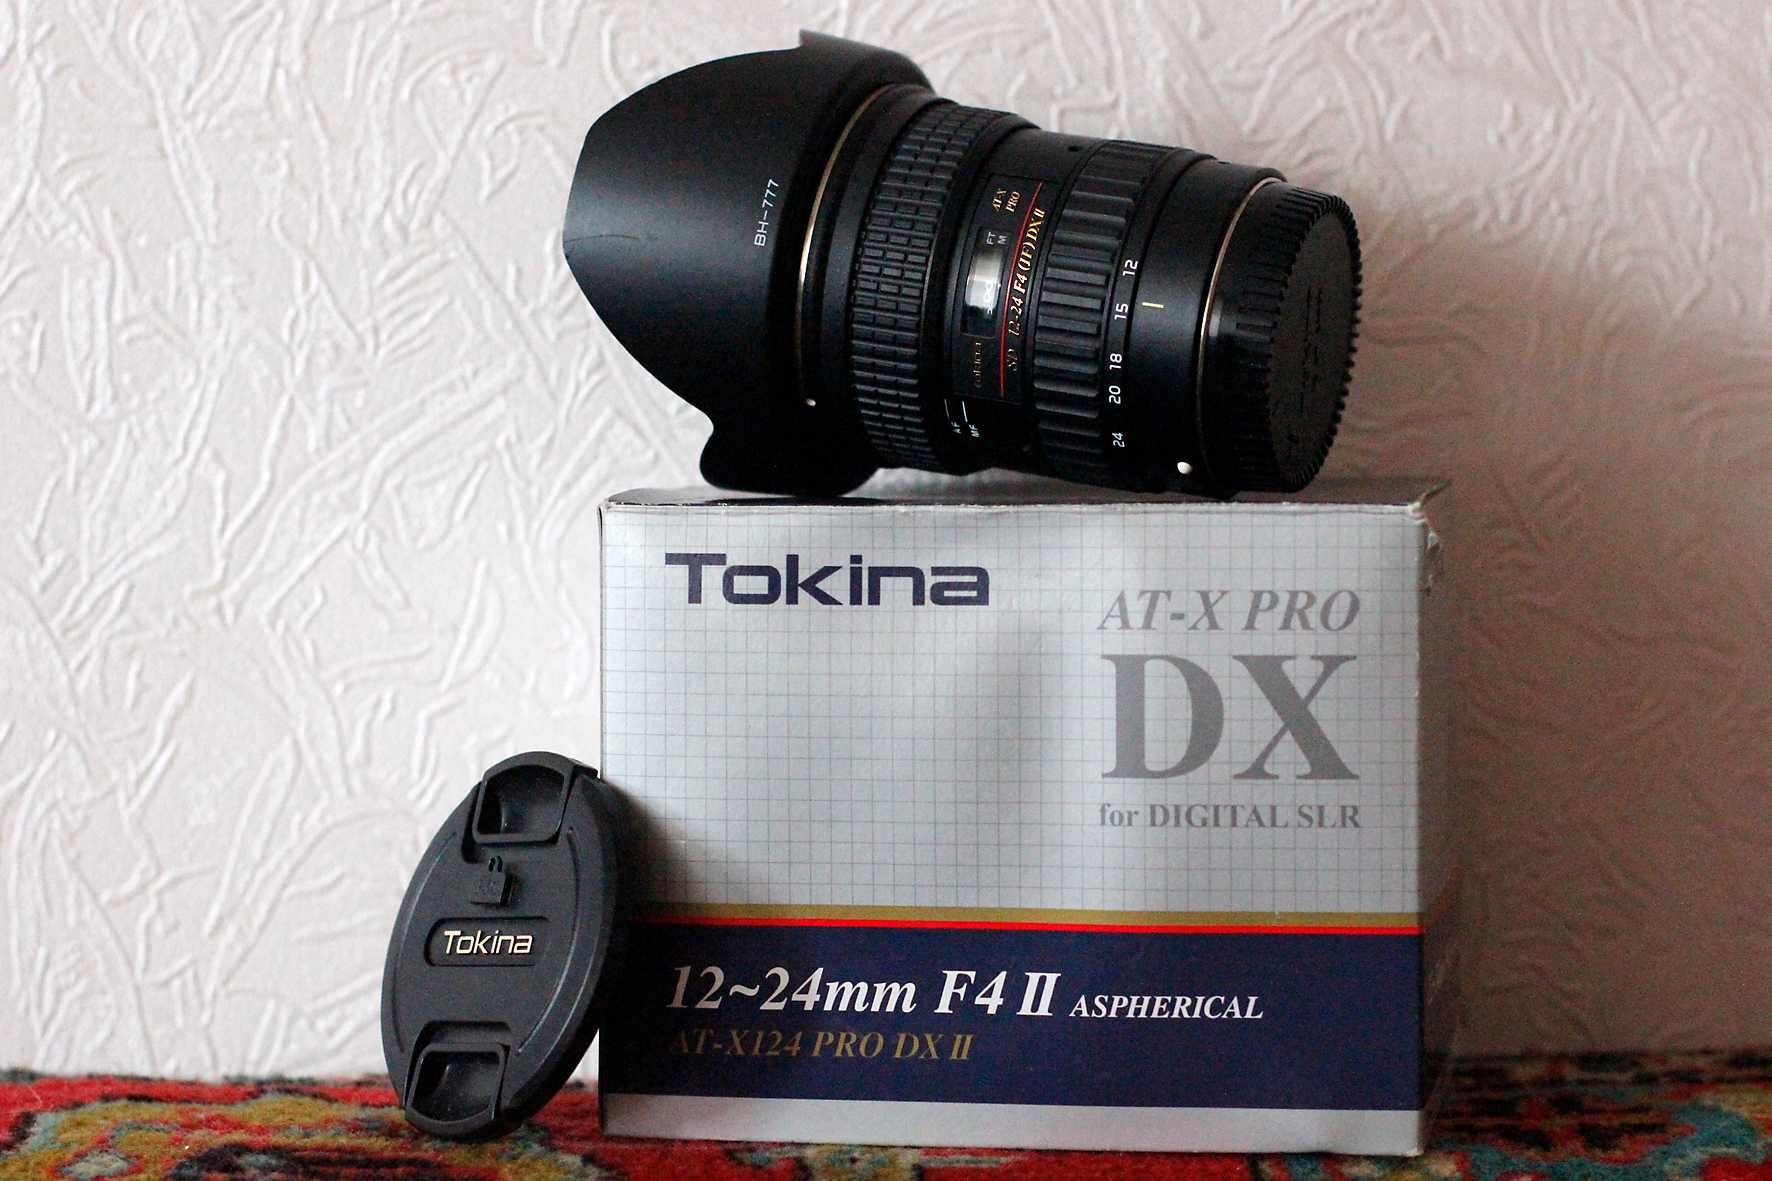 Tokina AT-X PRO DX II 12-24mm f/4.0 байонет Canon EF